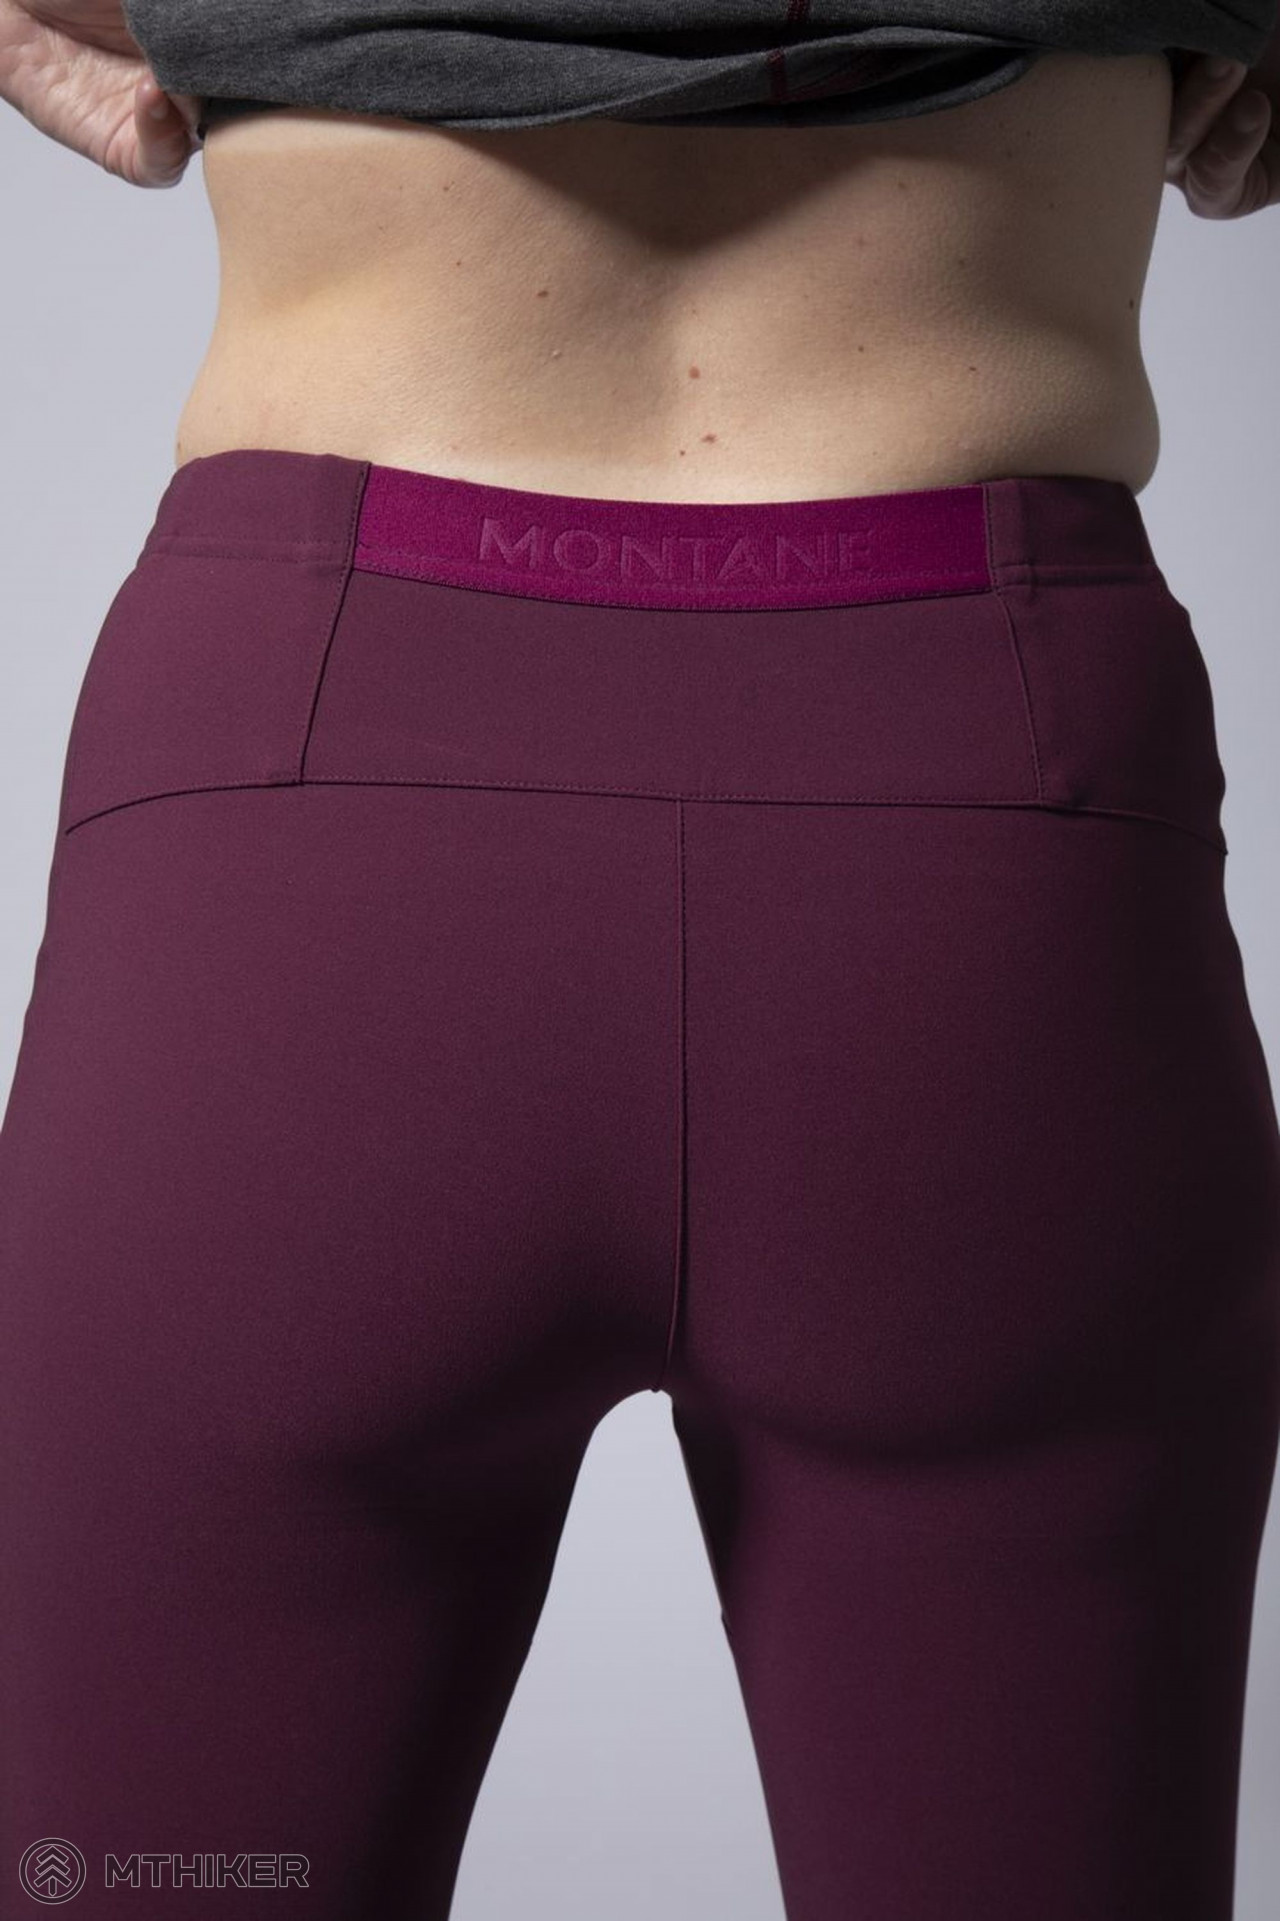 Montane FEM INEO PRE PANTS-REG LEG women's pants, black - MTBIKER.shop